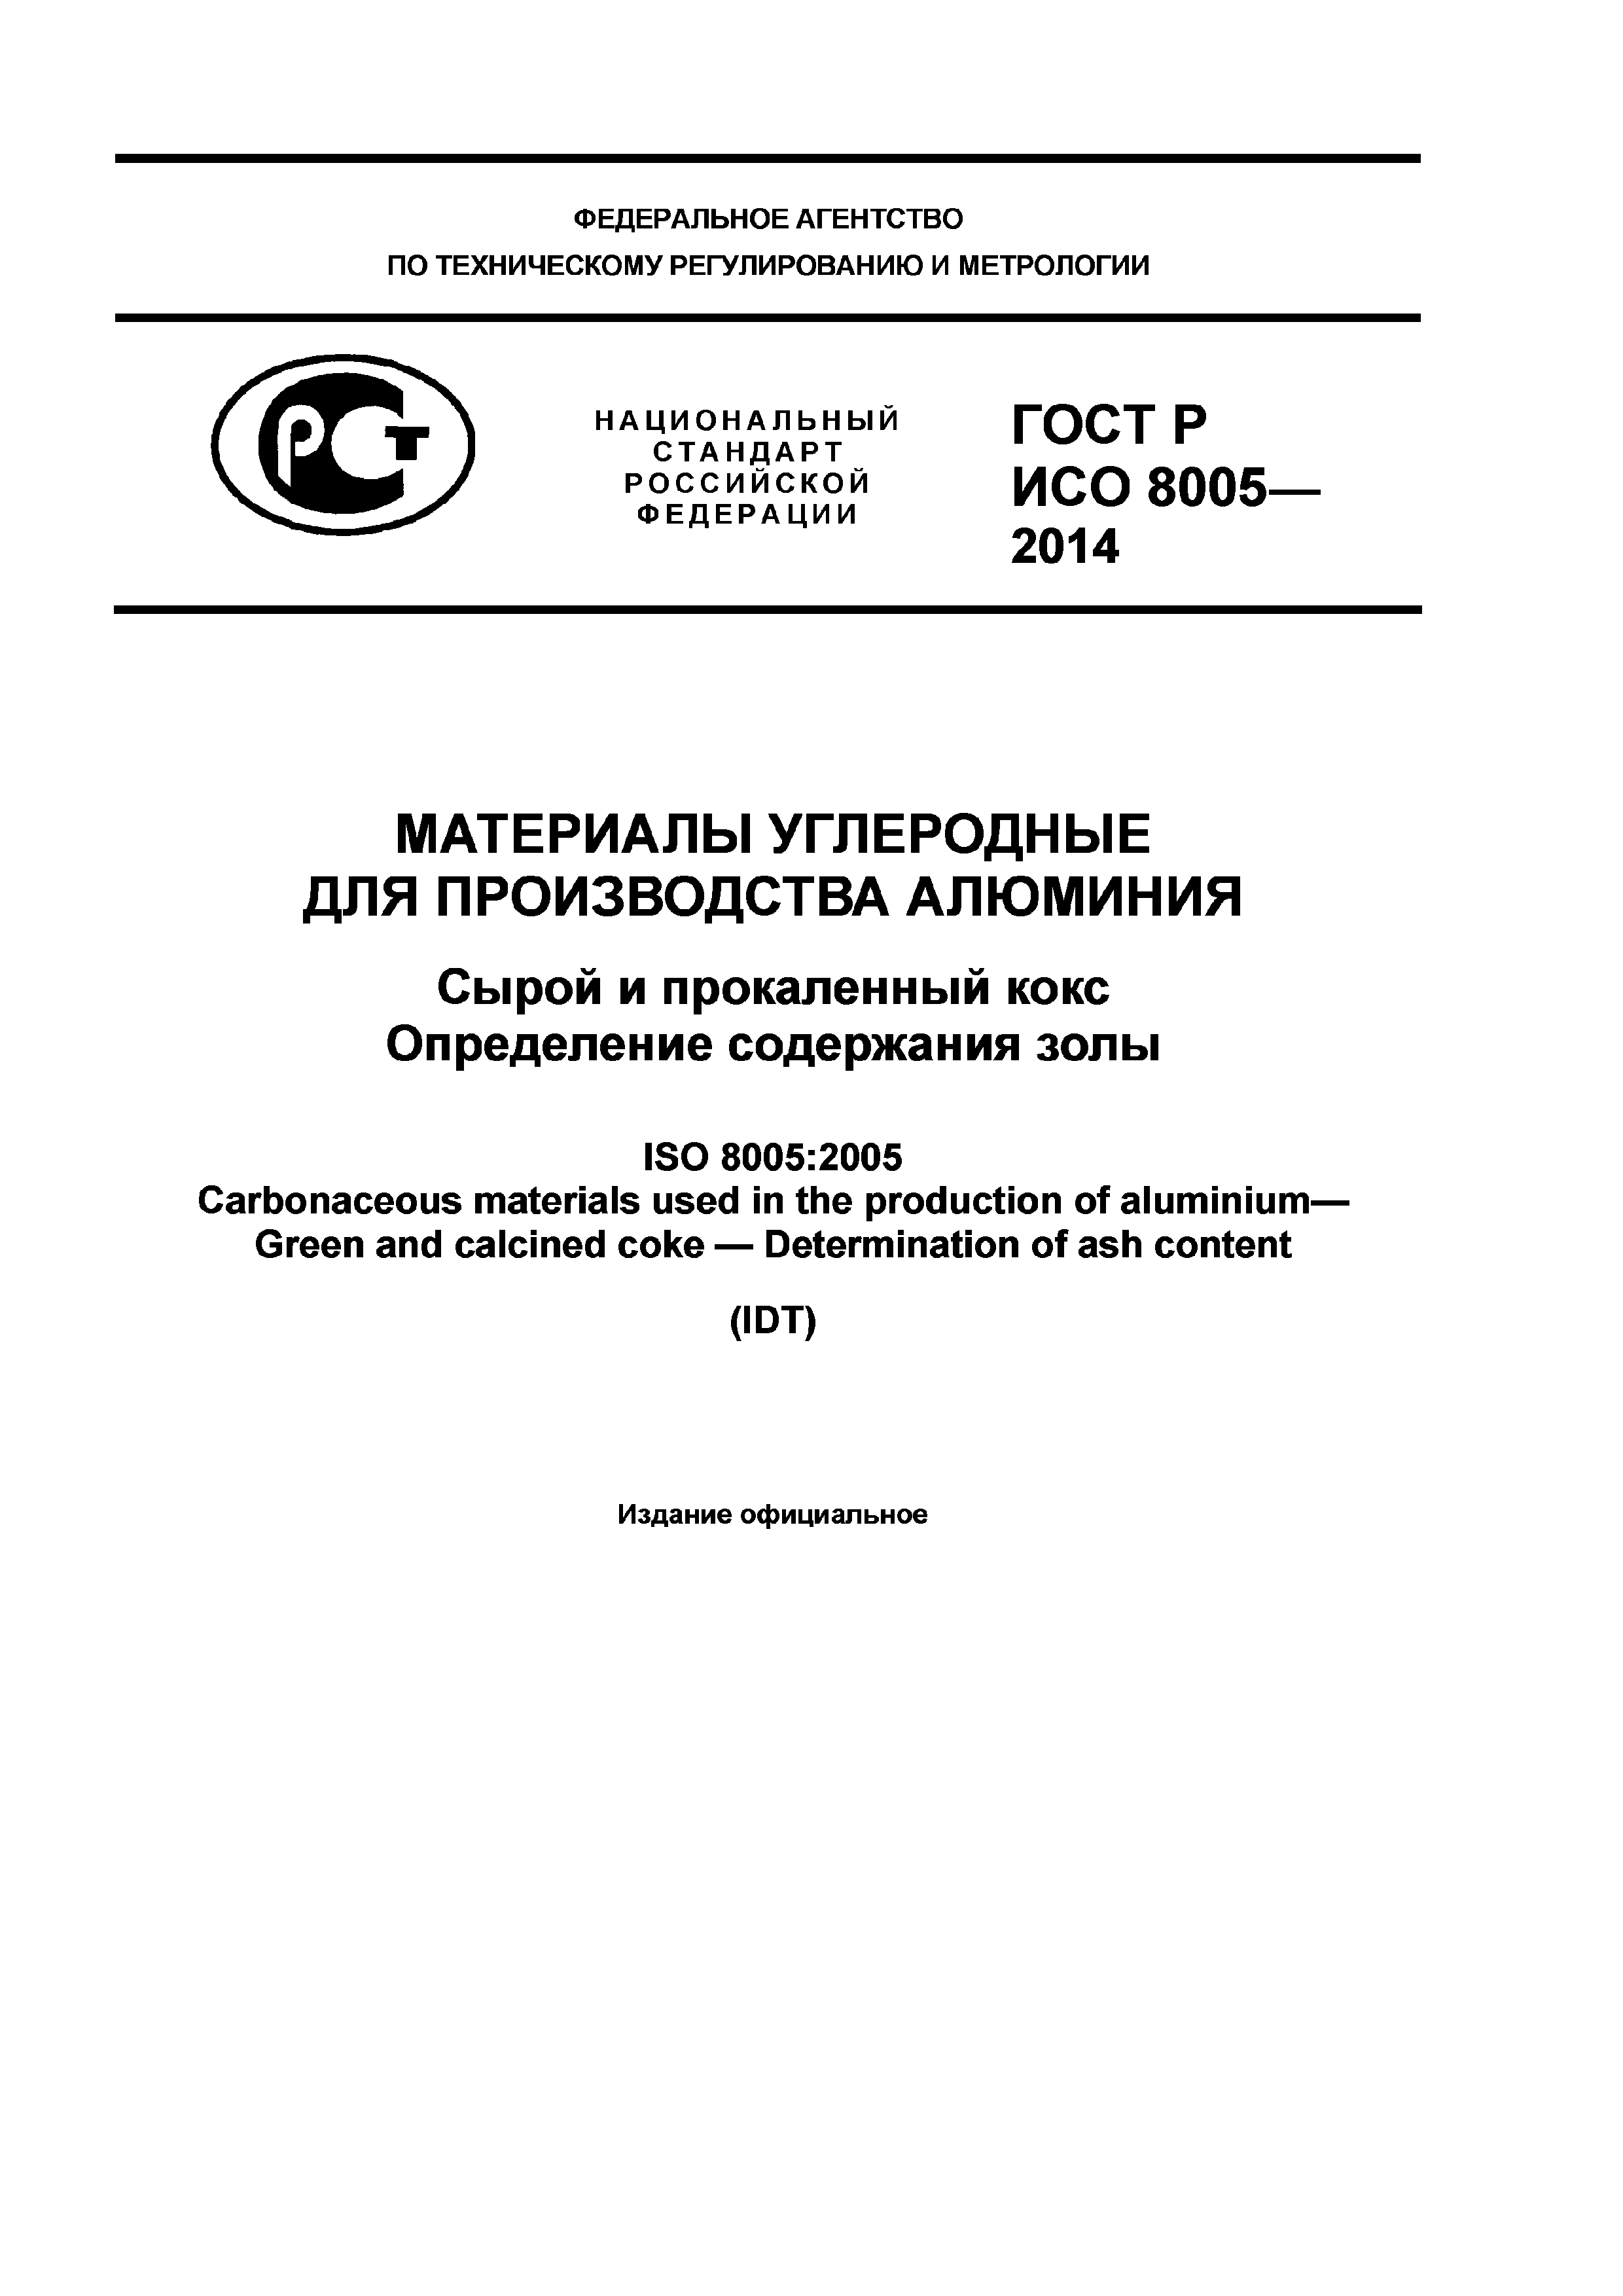 ГОСТ Р ИСО 8005-2014